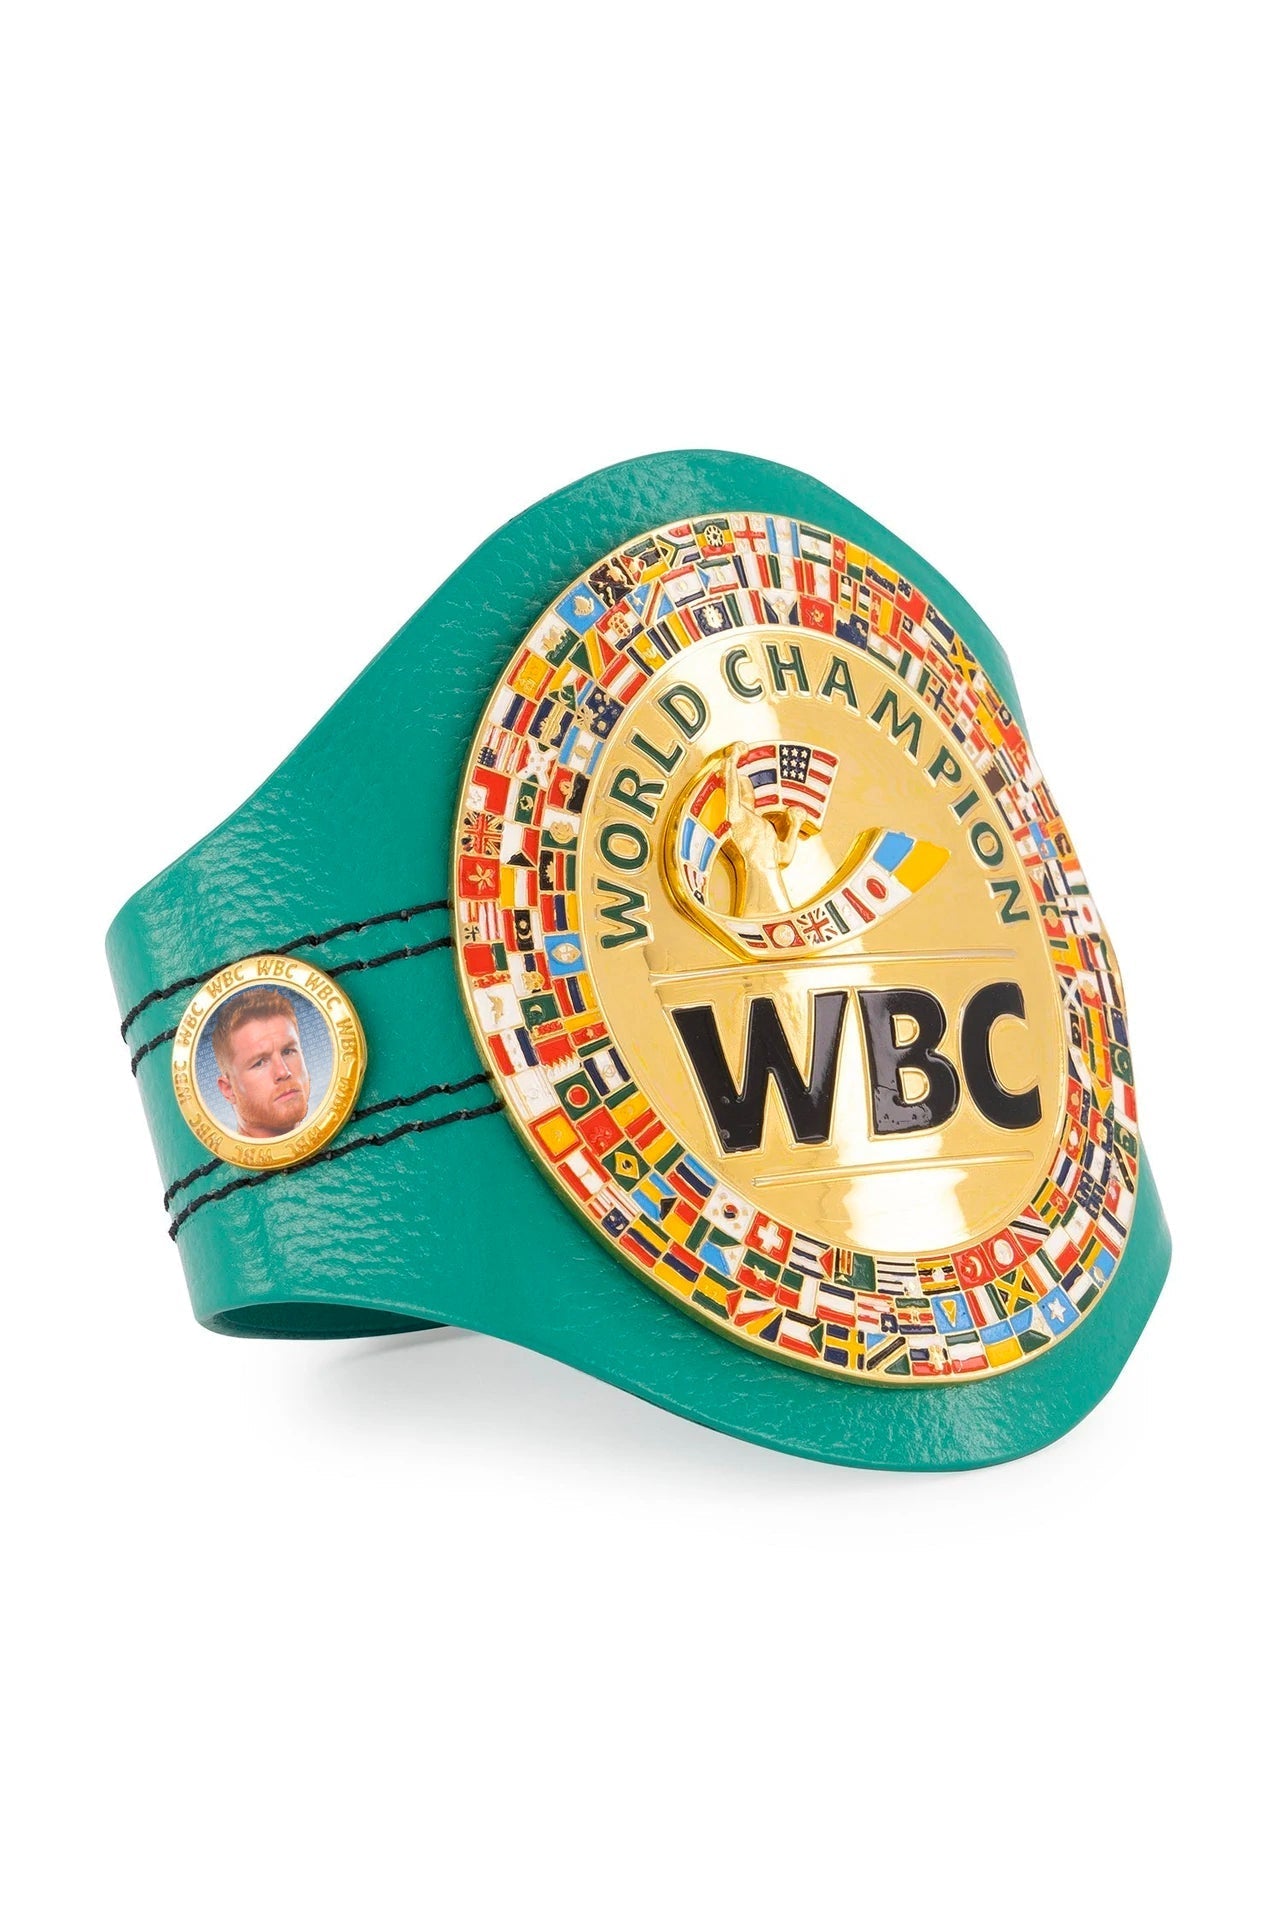 WBC Store WBC - Mini Belt Saúl “Canelo Álvarez”